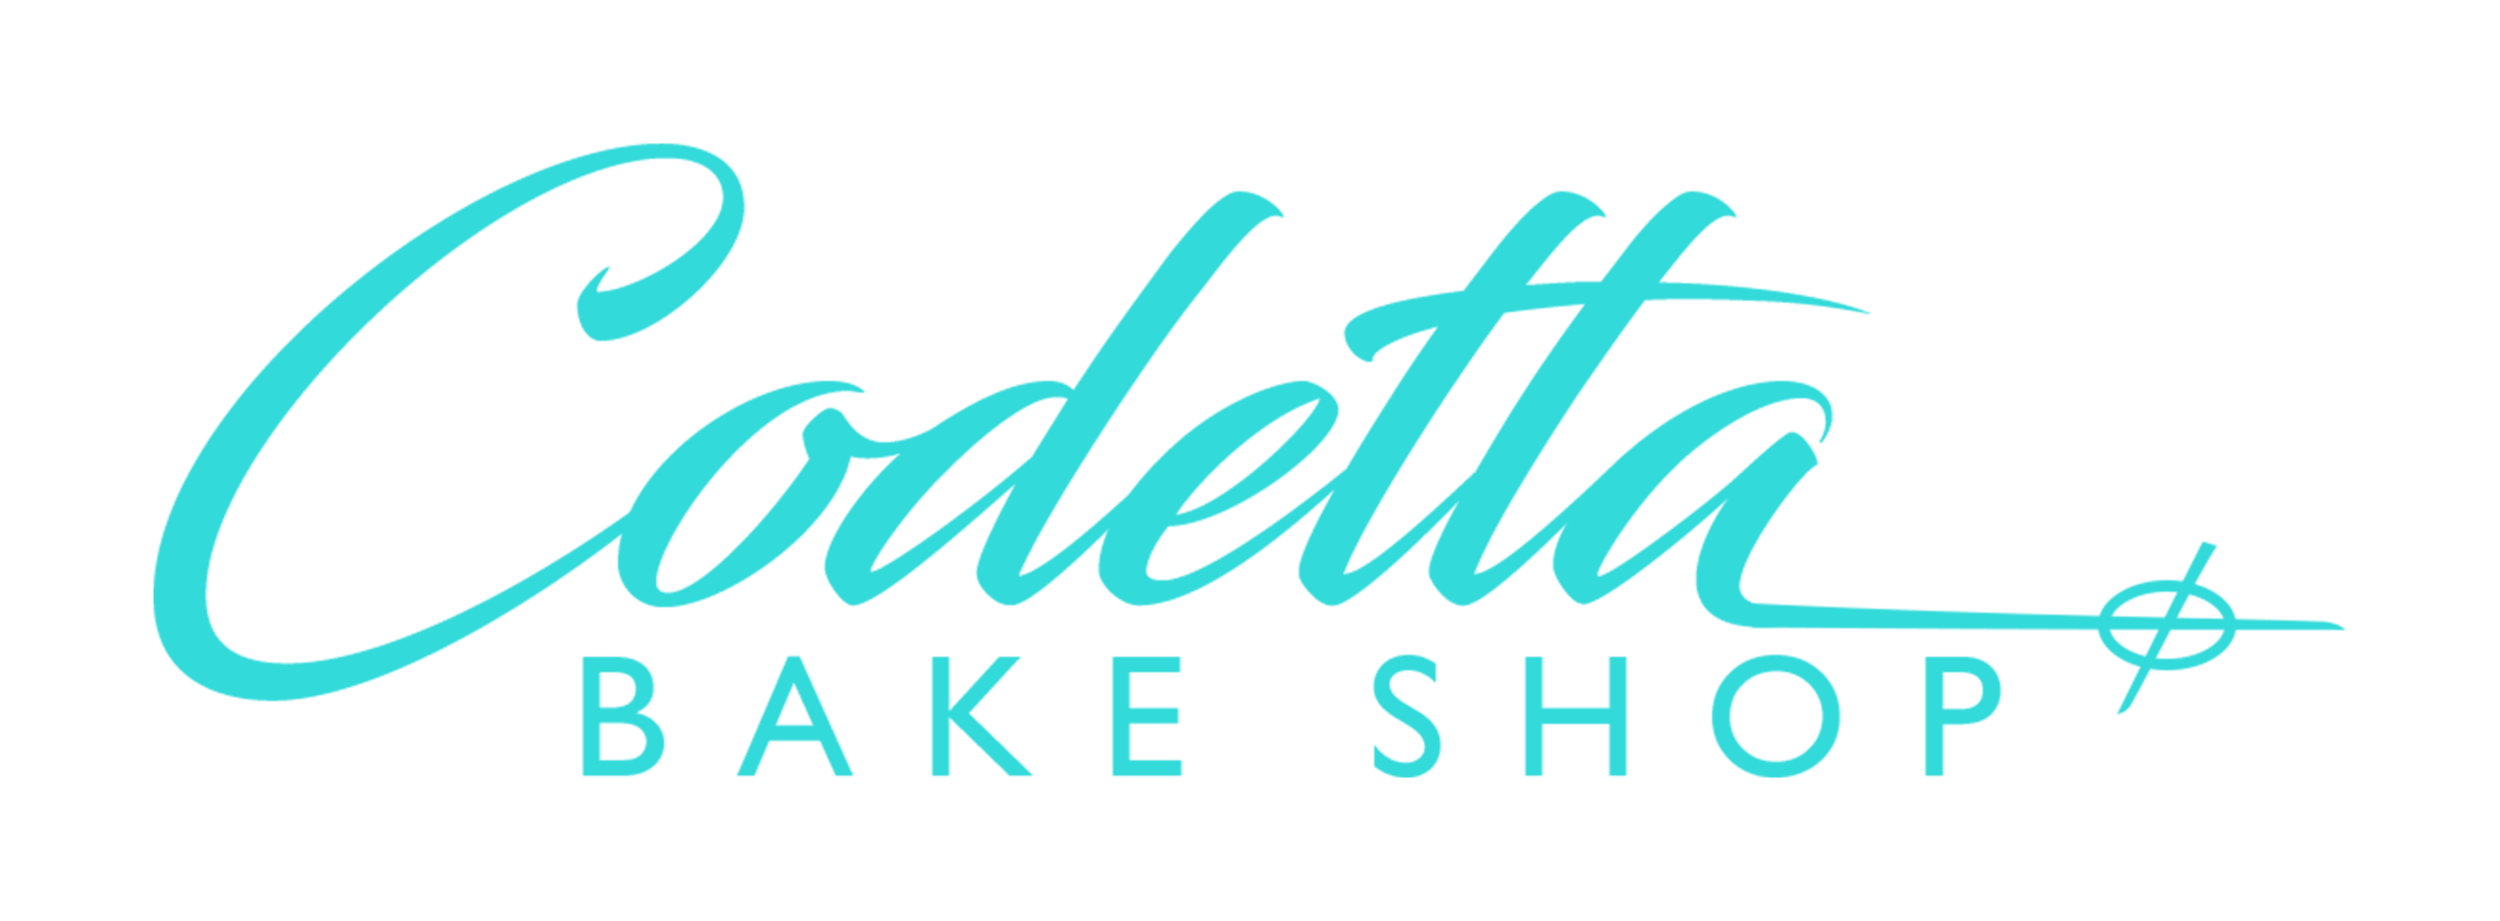 Codetta Bake Shop